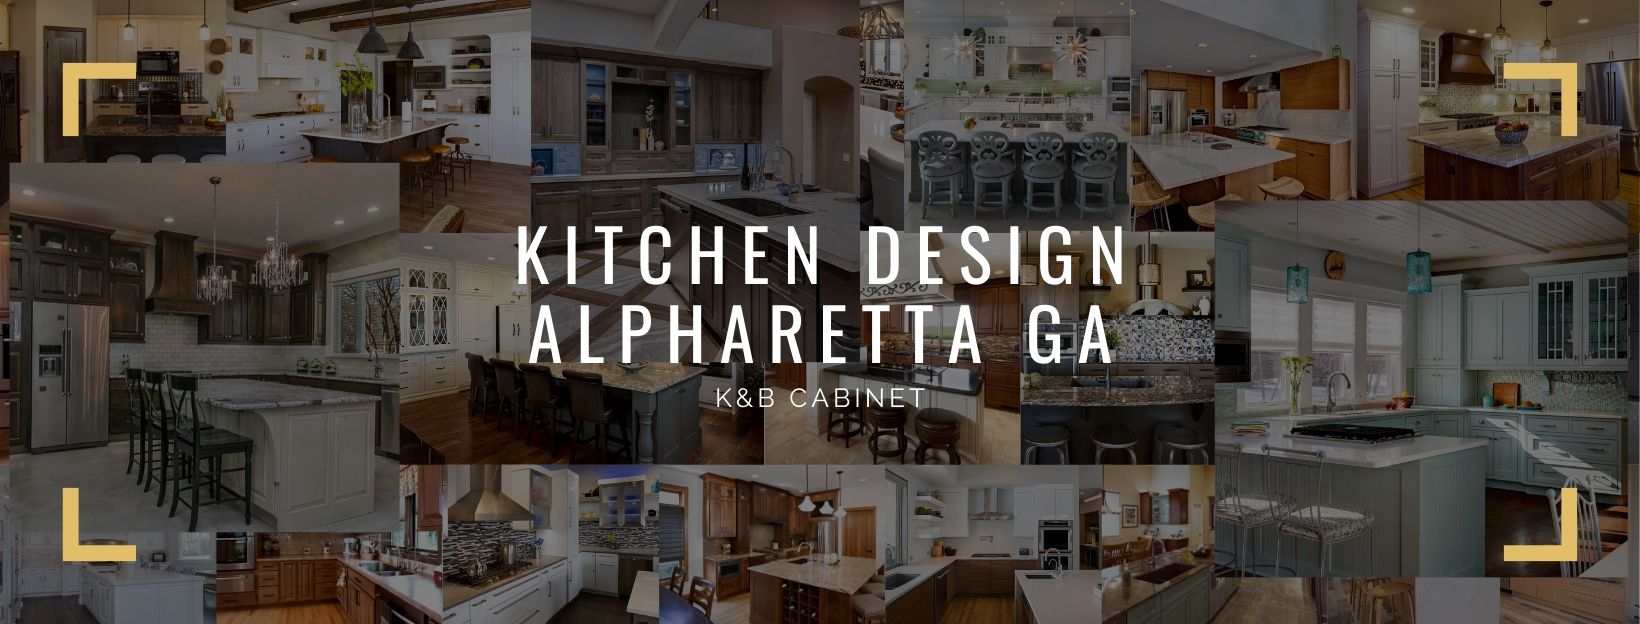 Kitchen Design Alpharetta GA